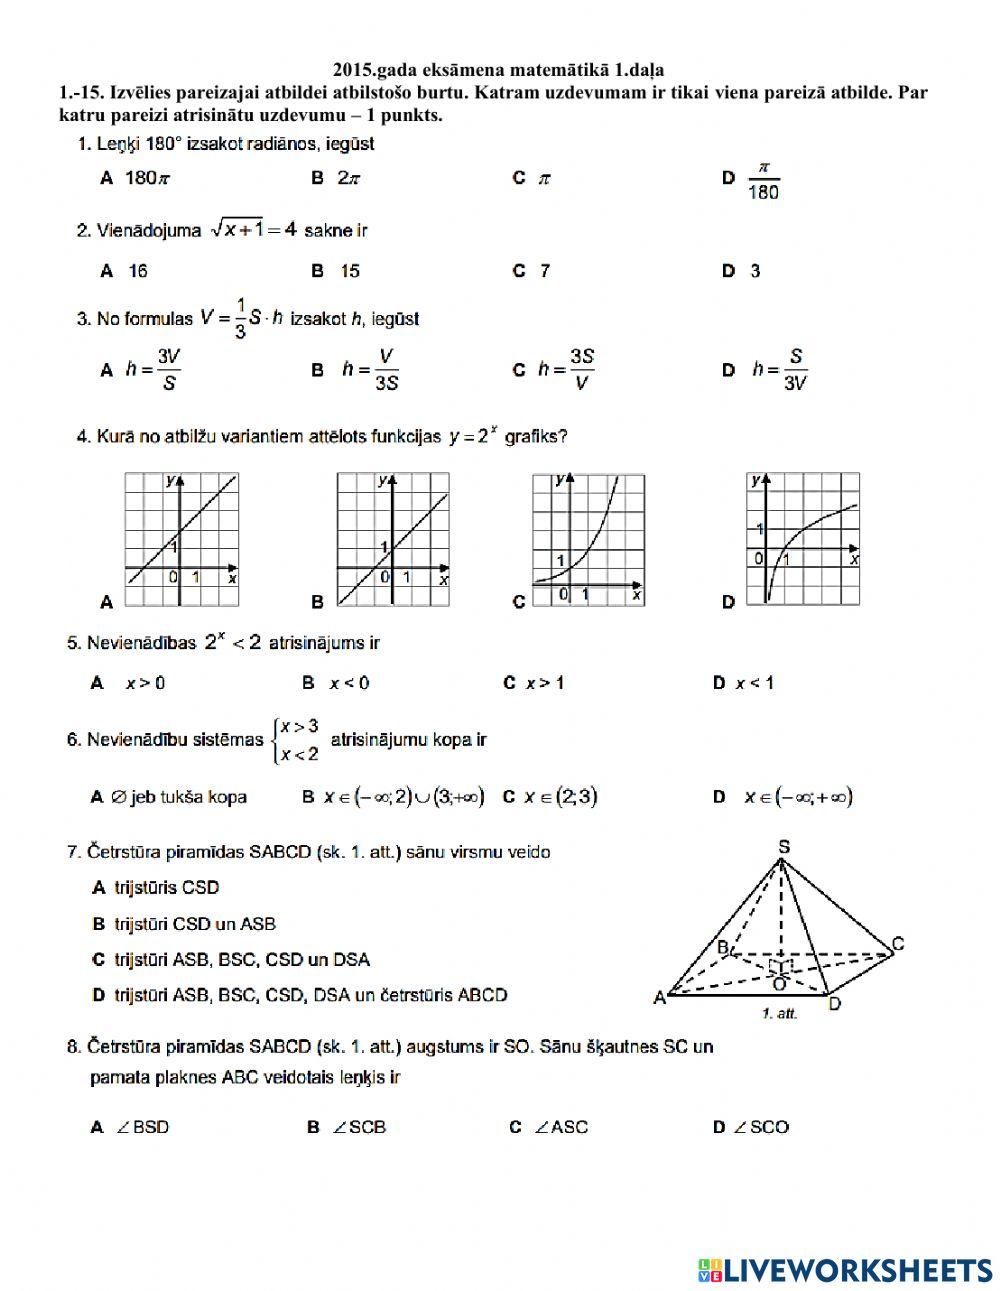 2015.gada matemātikas eksāmena 1.daļa